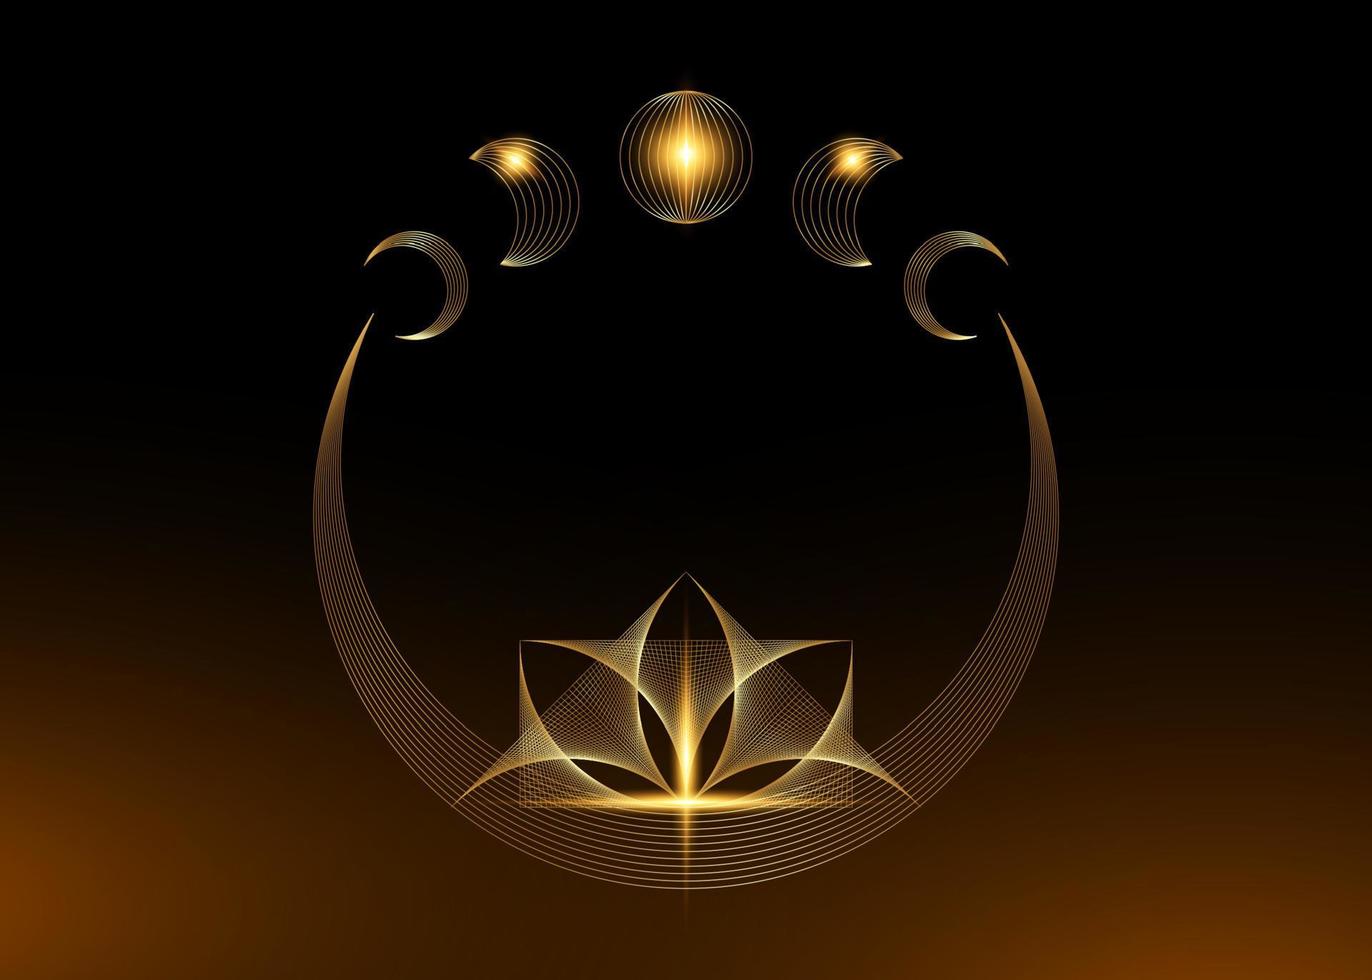 croissant de lune de lotus, fleur de lotus mystique dorée et phases de lune, géométrie sacrée. fil de fer géométrique de ligne d'or de chaîne. Thread art logo design vecteur isolé sur fond noir